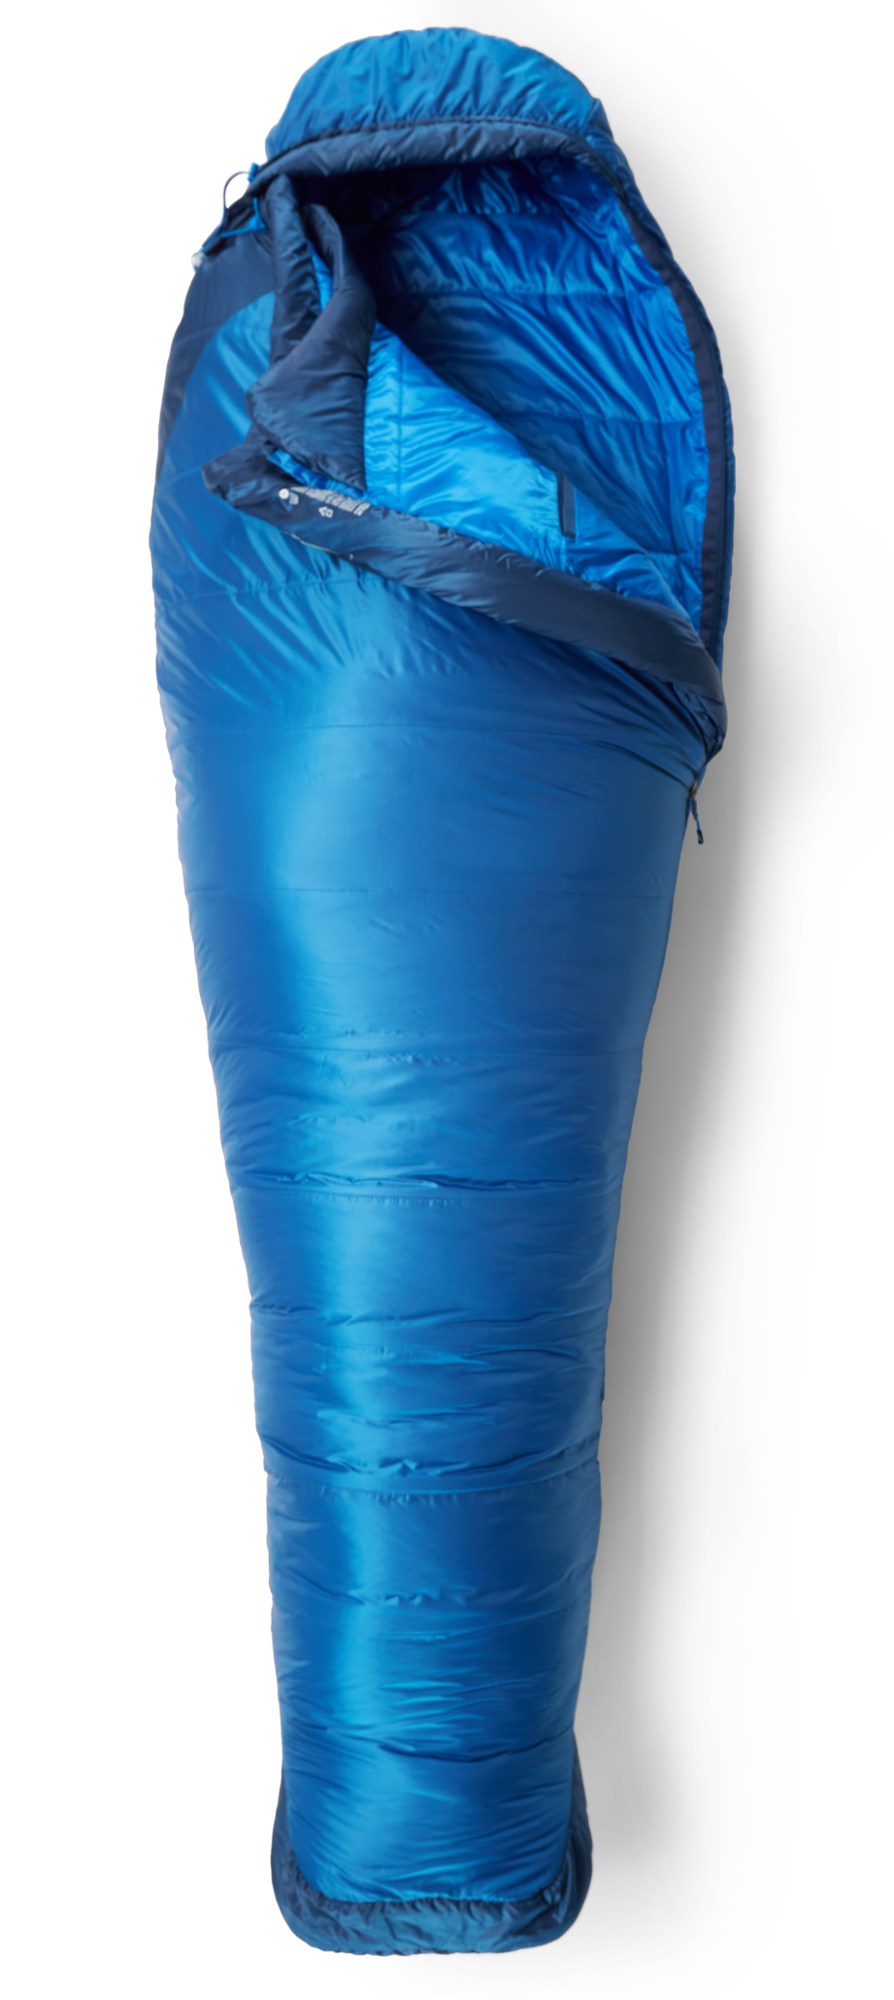 Спальный мешок Trestles Elite Eco 20 - мужской Marmot, синий